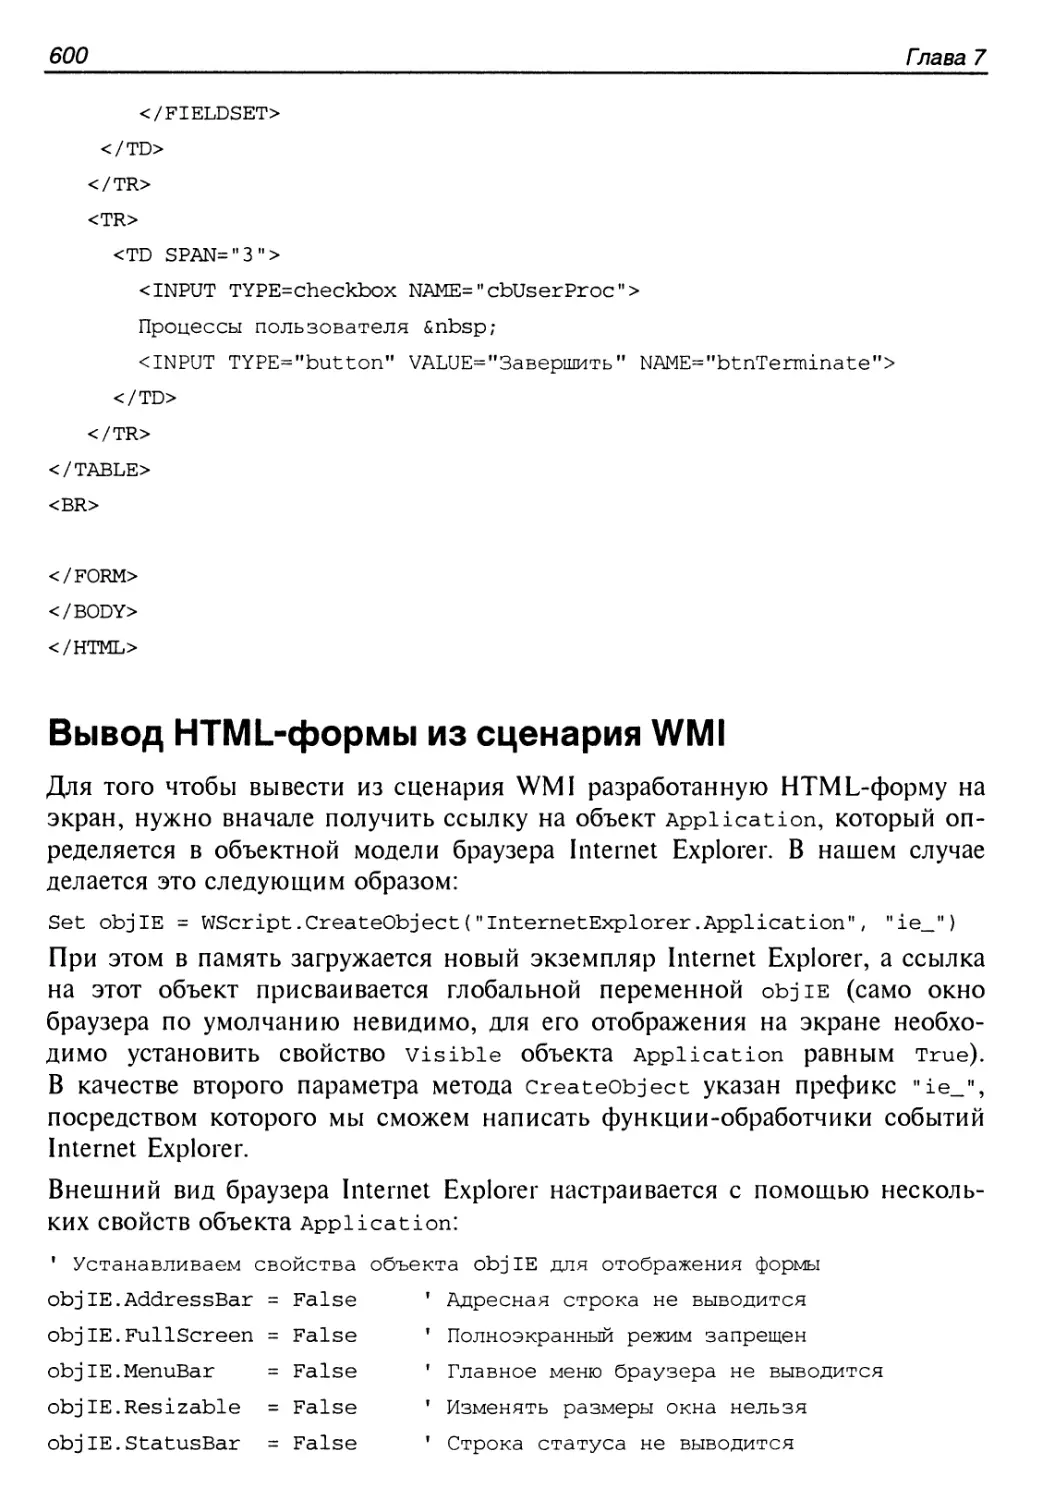 Вывод HTML-формы из сценария WMI